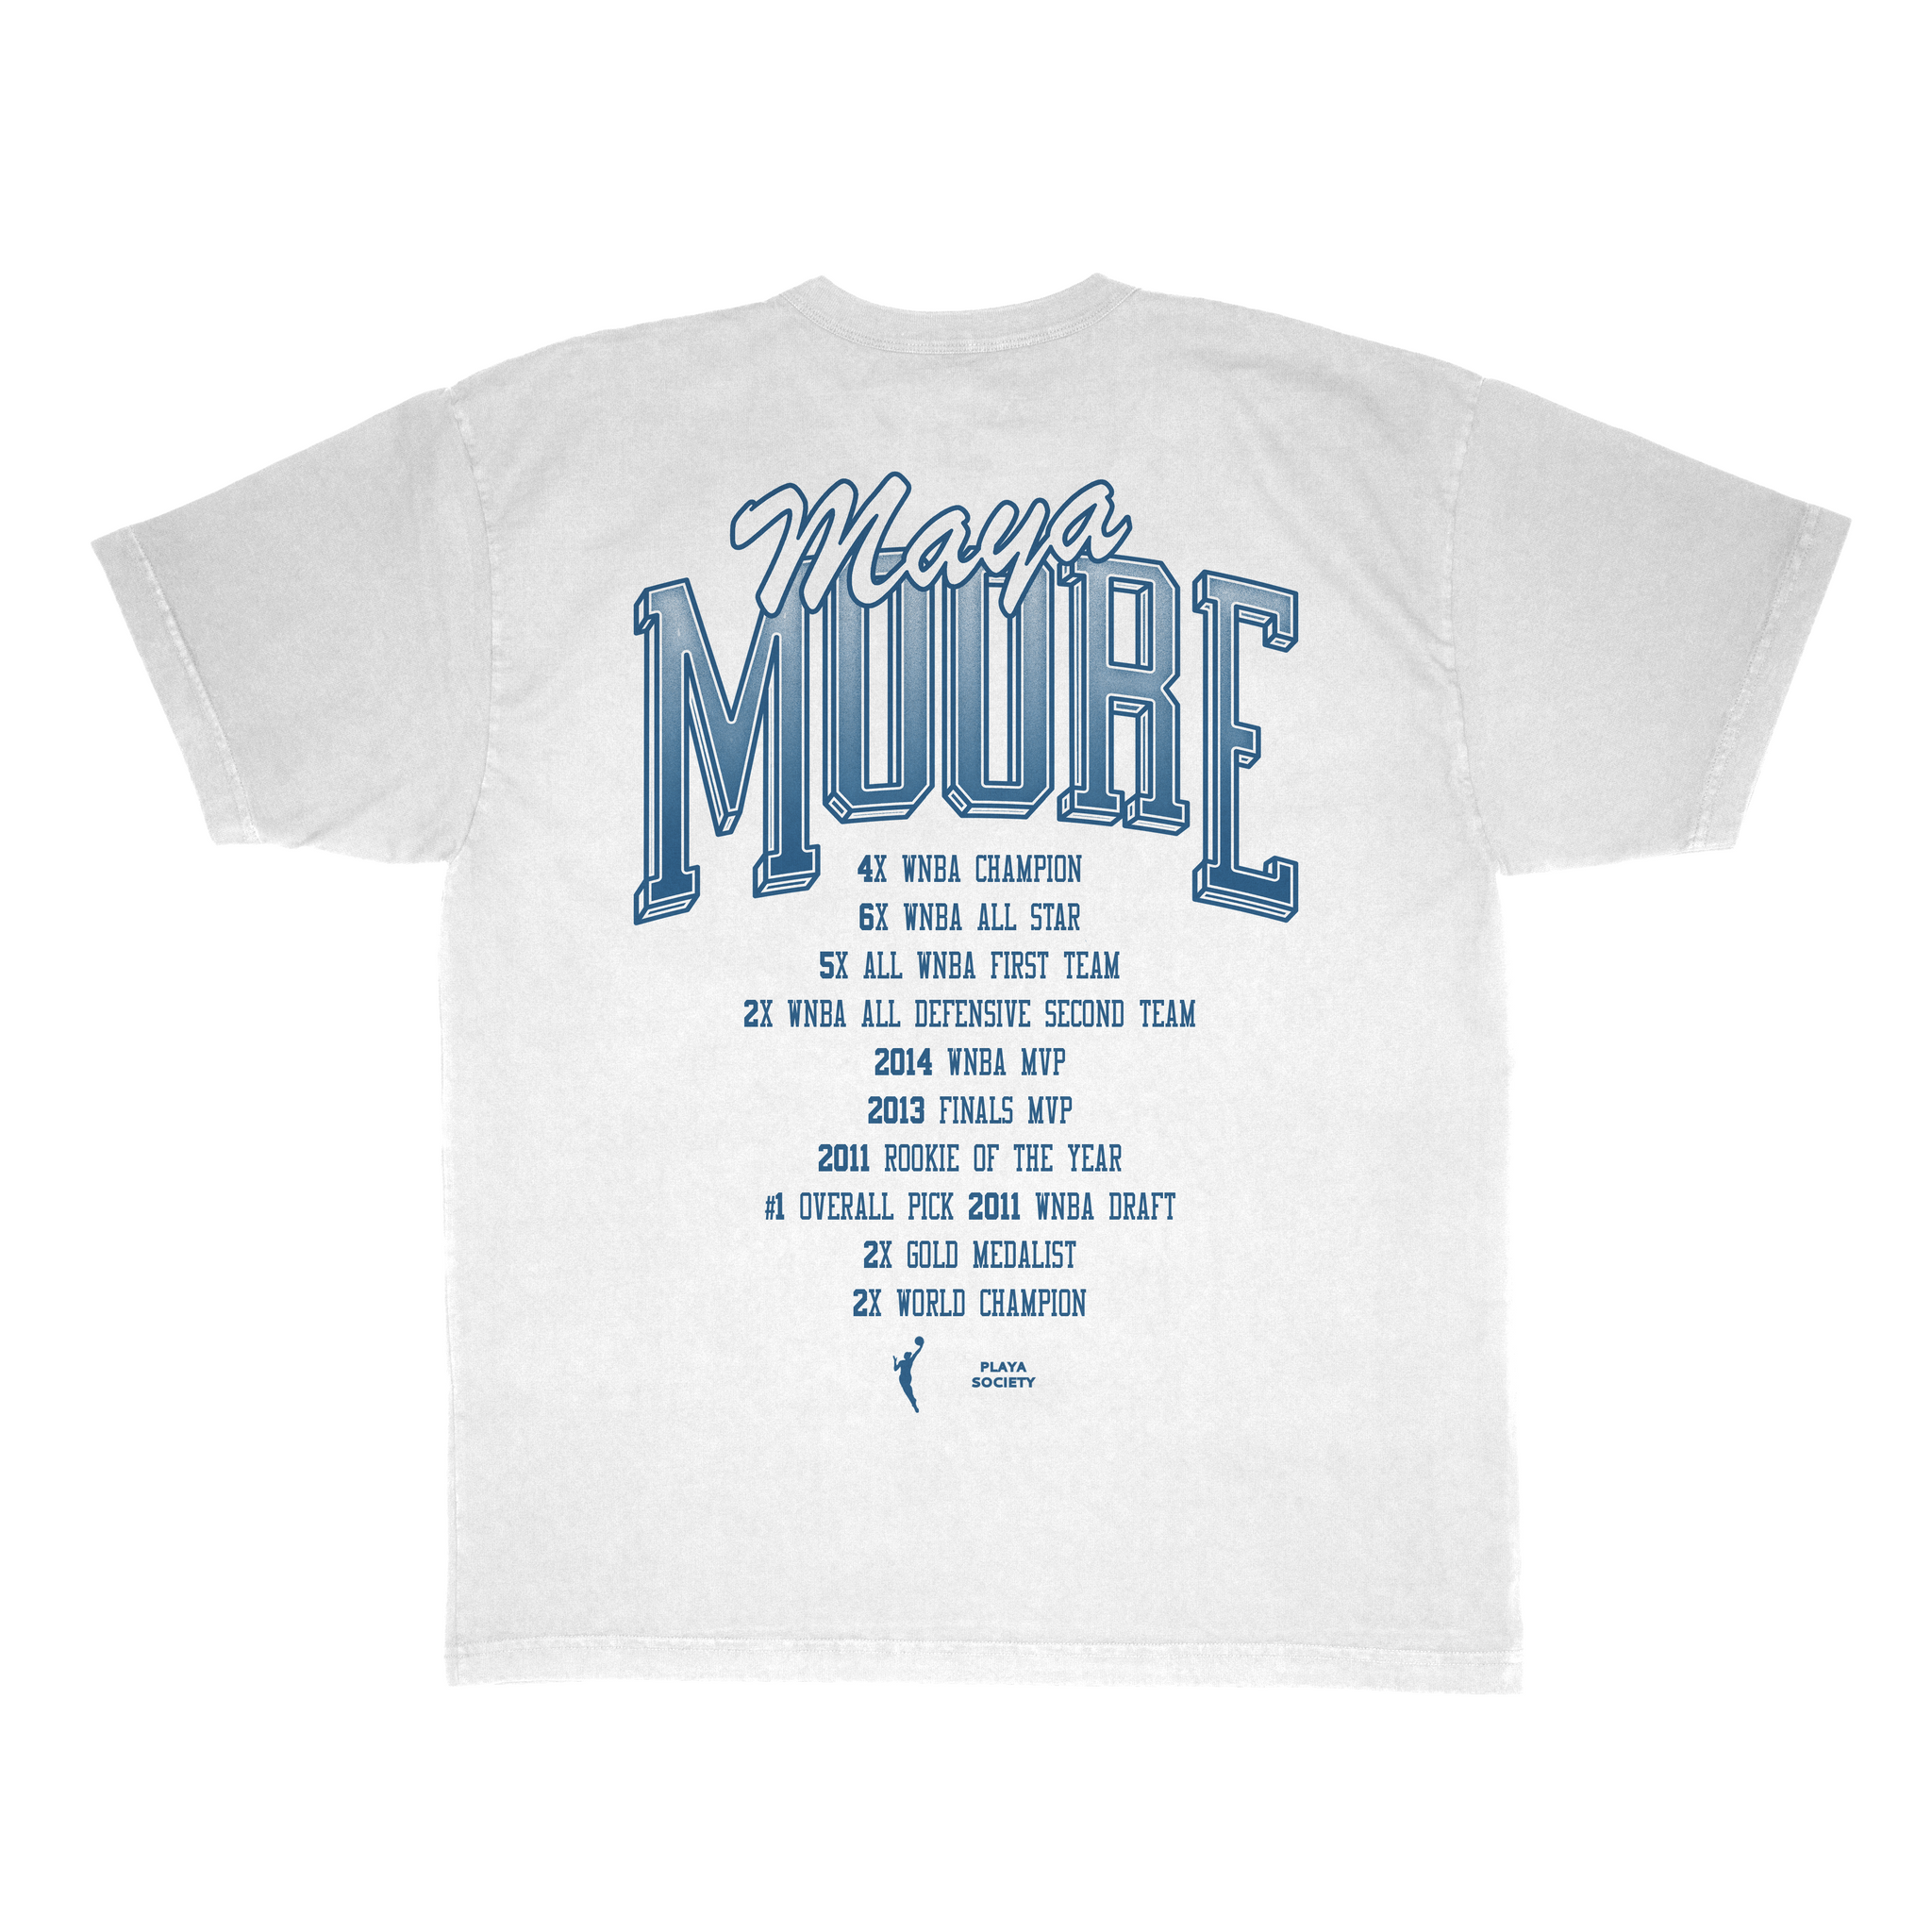 WNBA ‘23 Maya Moore T-Shirt - Playa Society